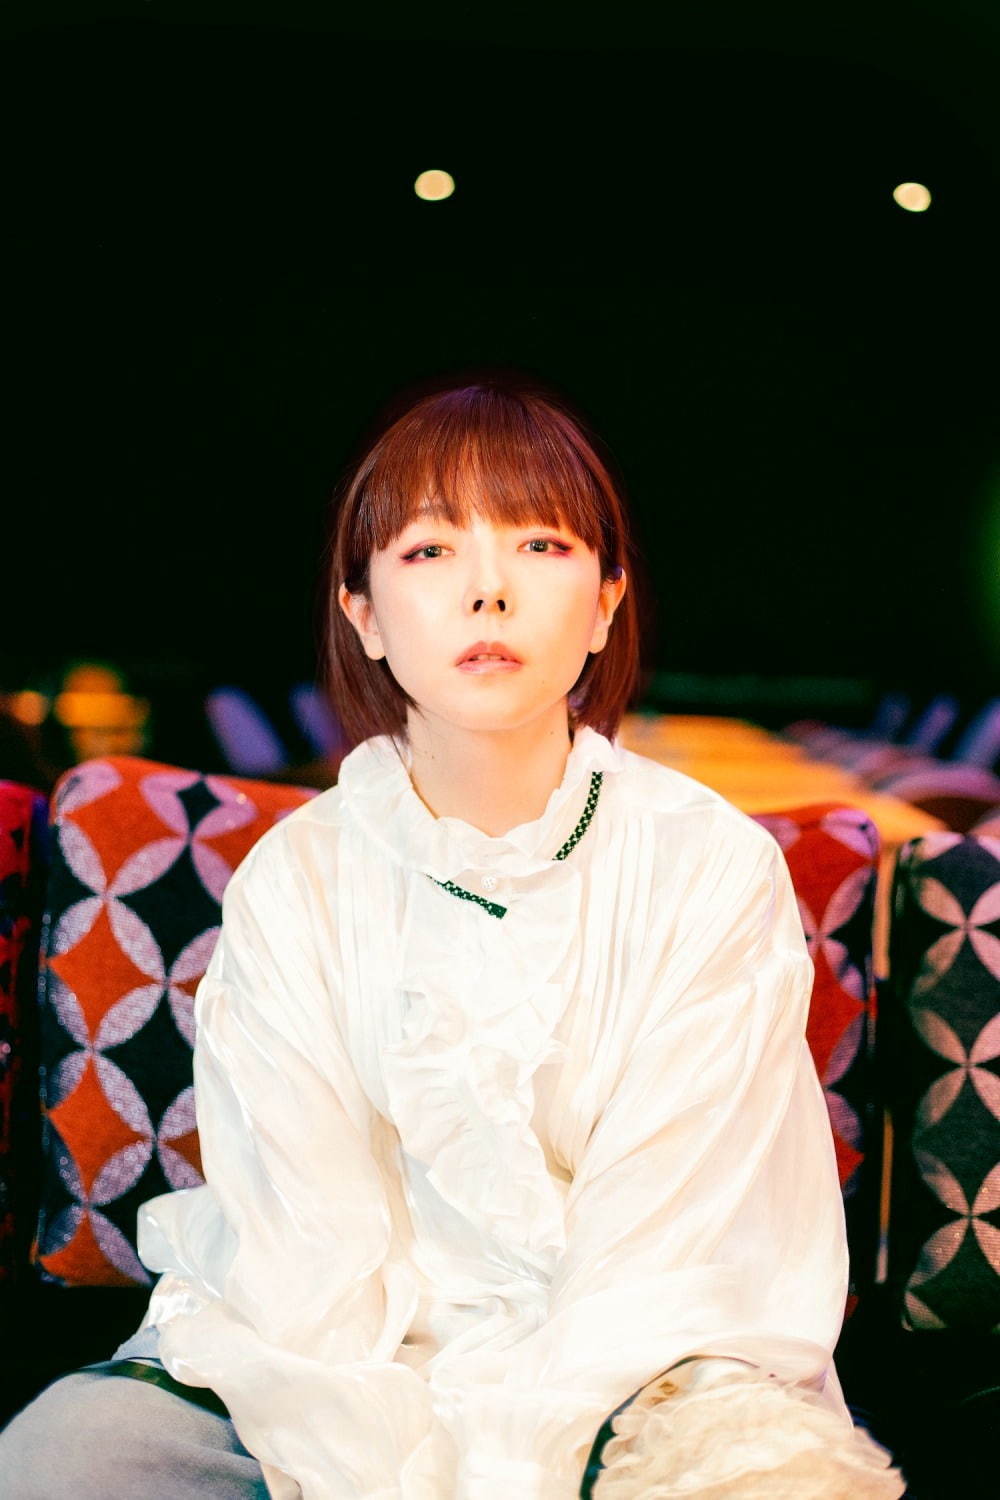 aikoの14thアルバム『どうしたって伝えられないから』全13曲収録「青空 ...